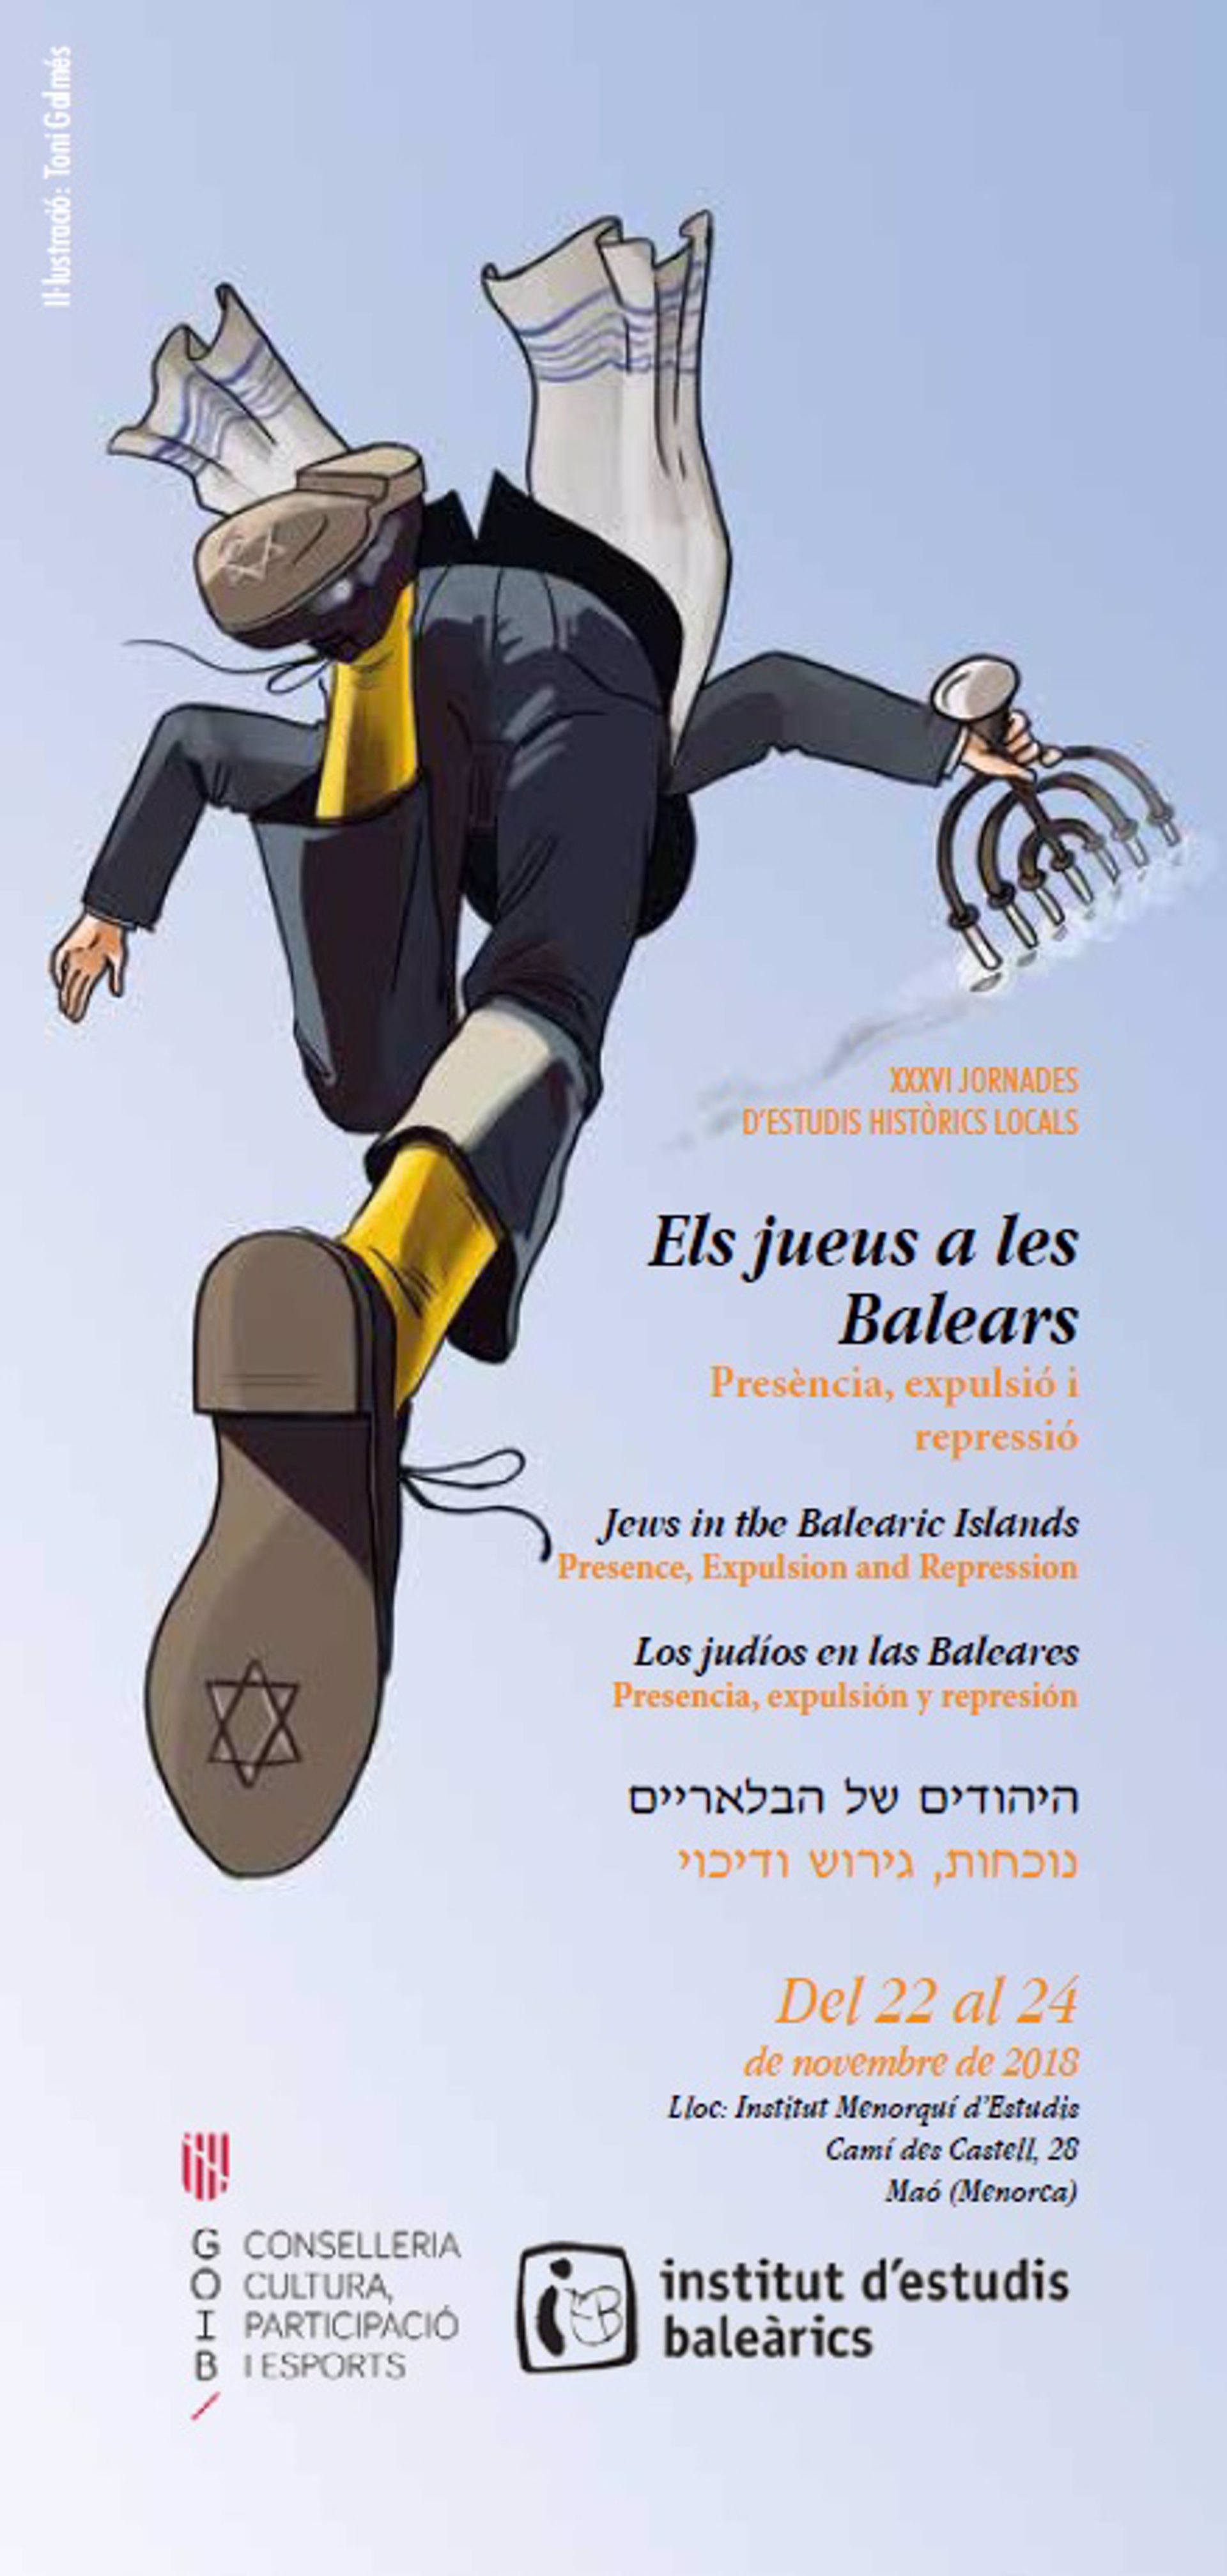 El Govern organiza en noviembre unas jornadas históricas dedicadas a los judíos en Baleares